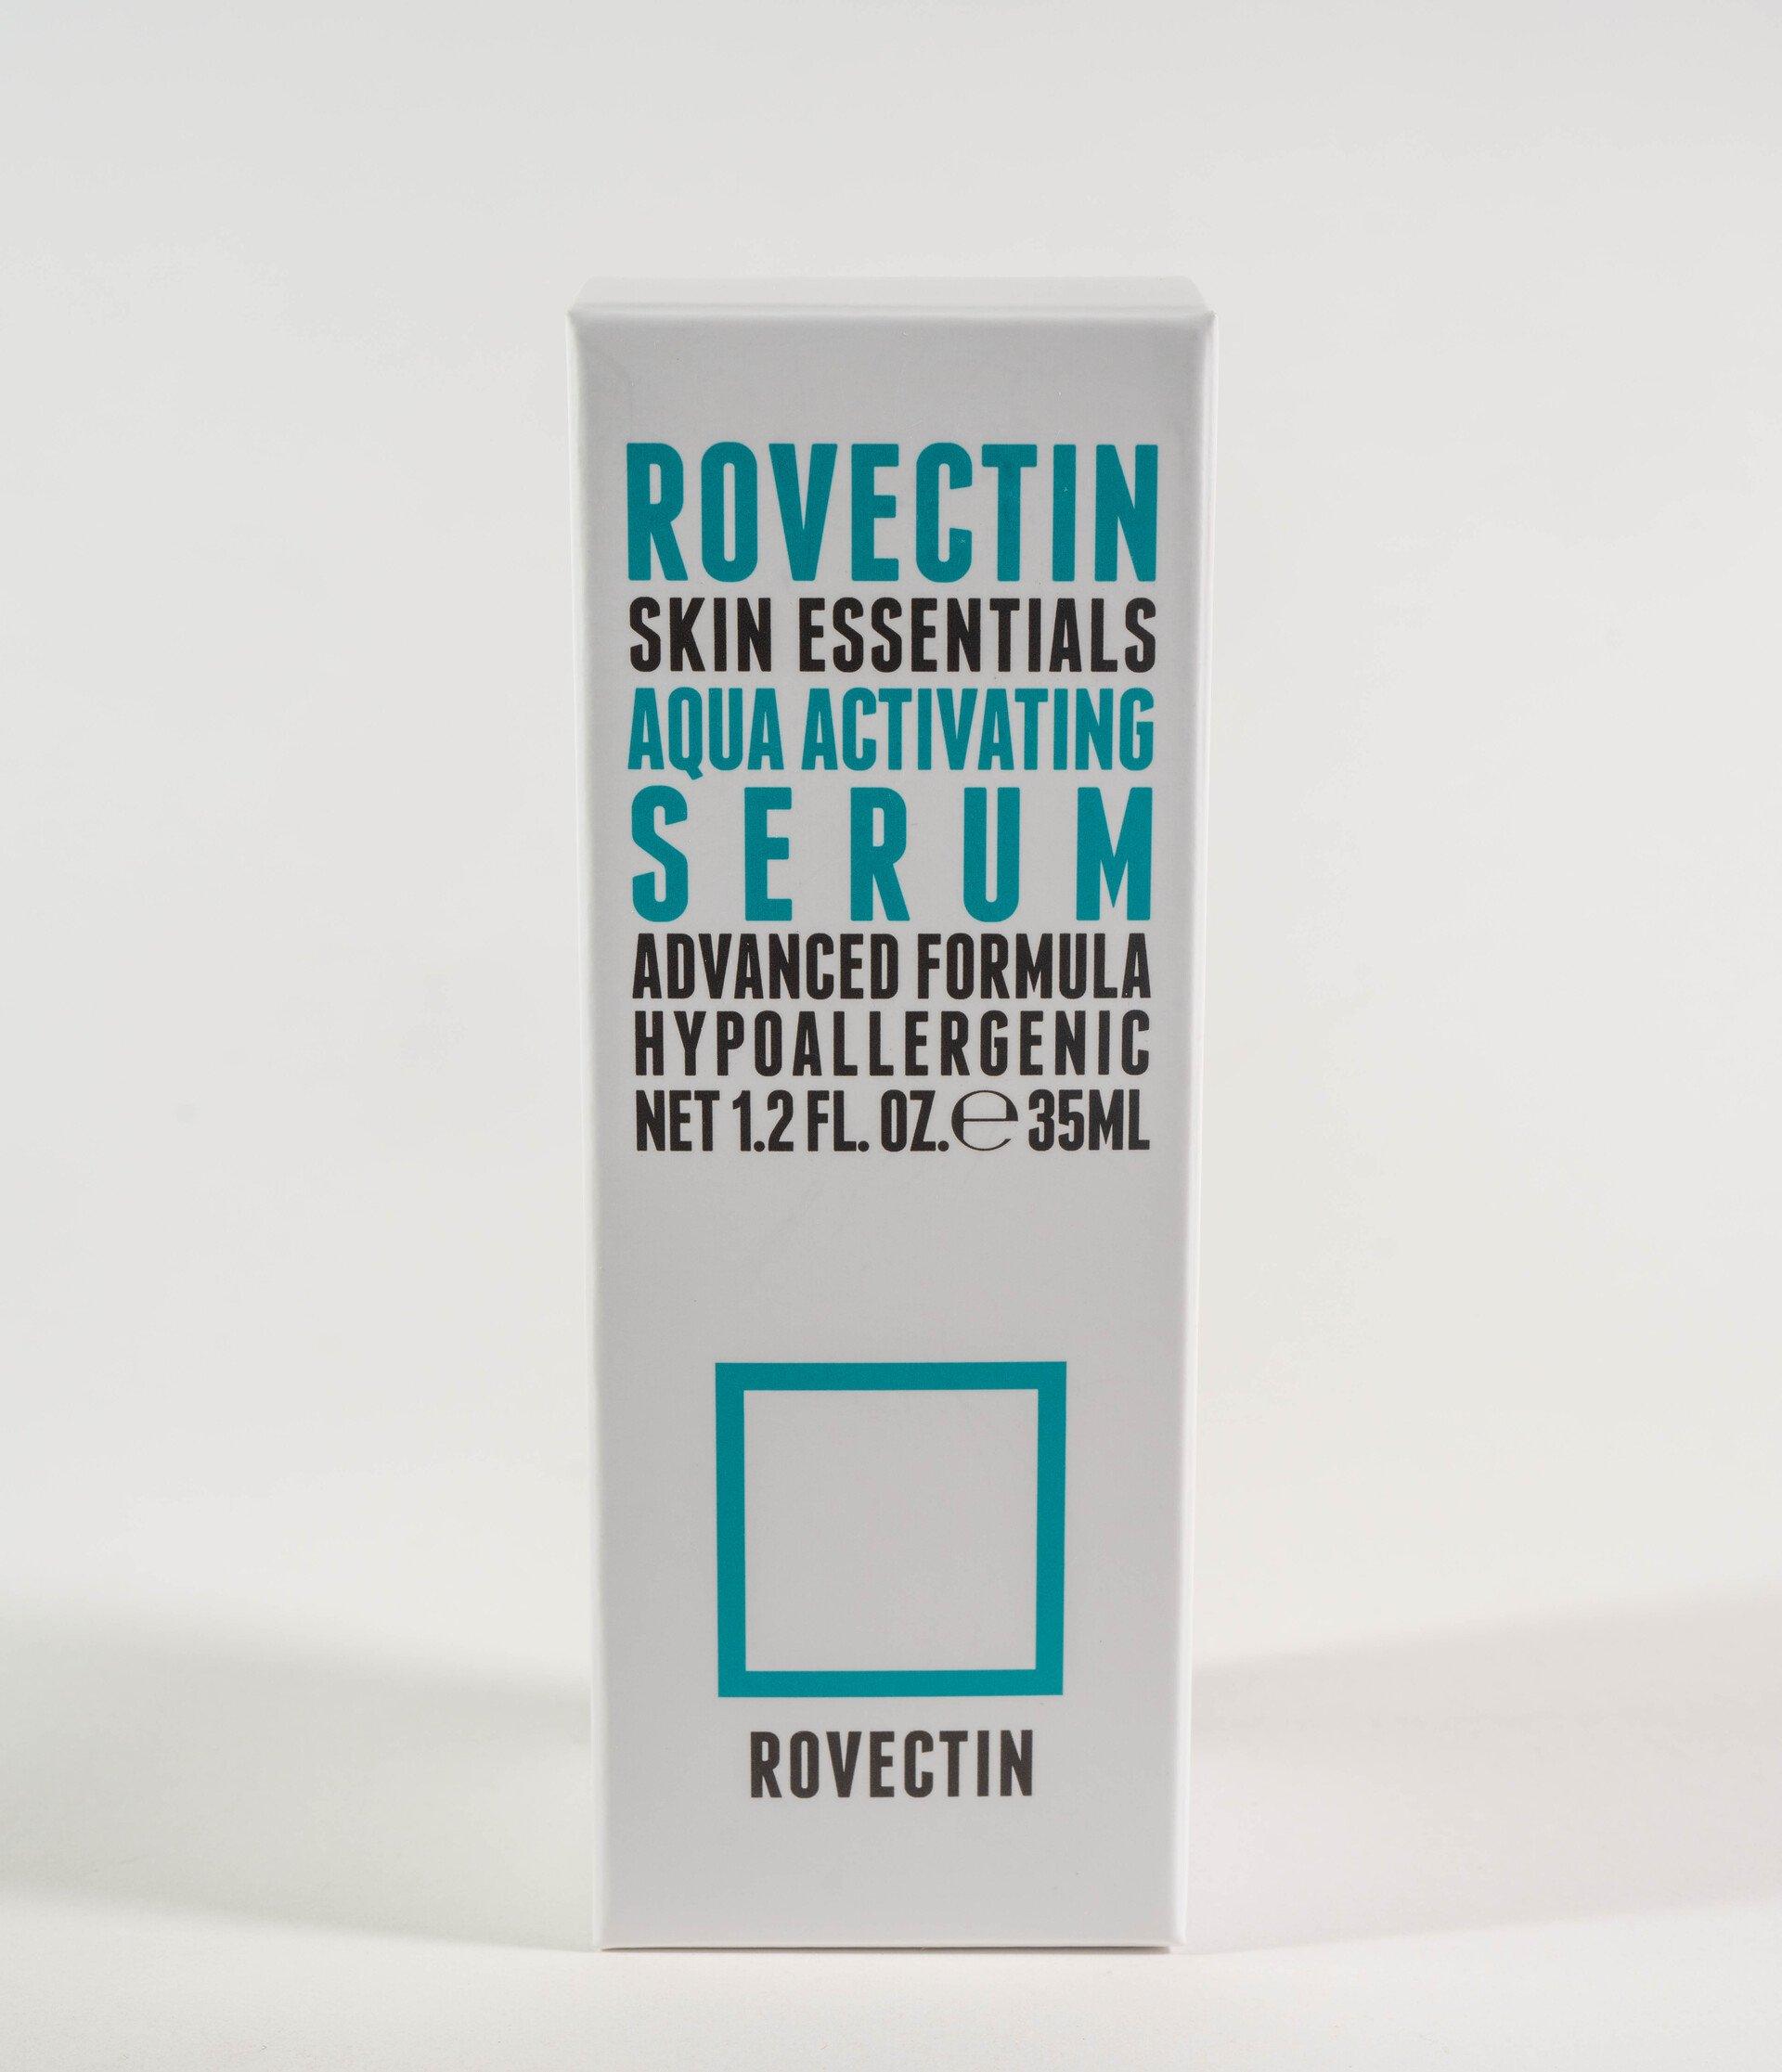 ROVECTIN Skin Essentials Aqua Activating Serum 35ml